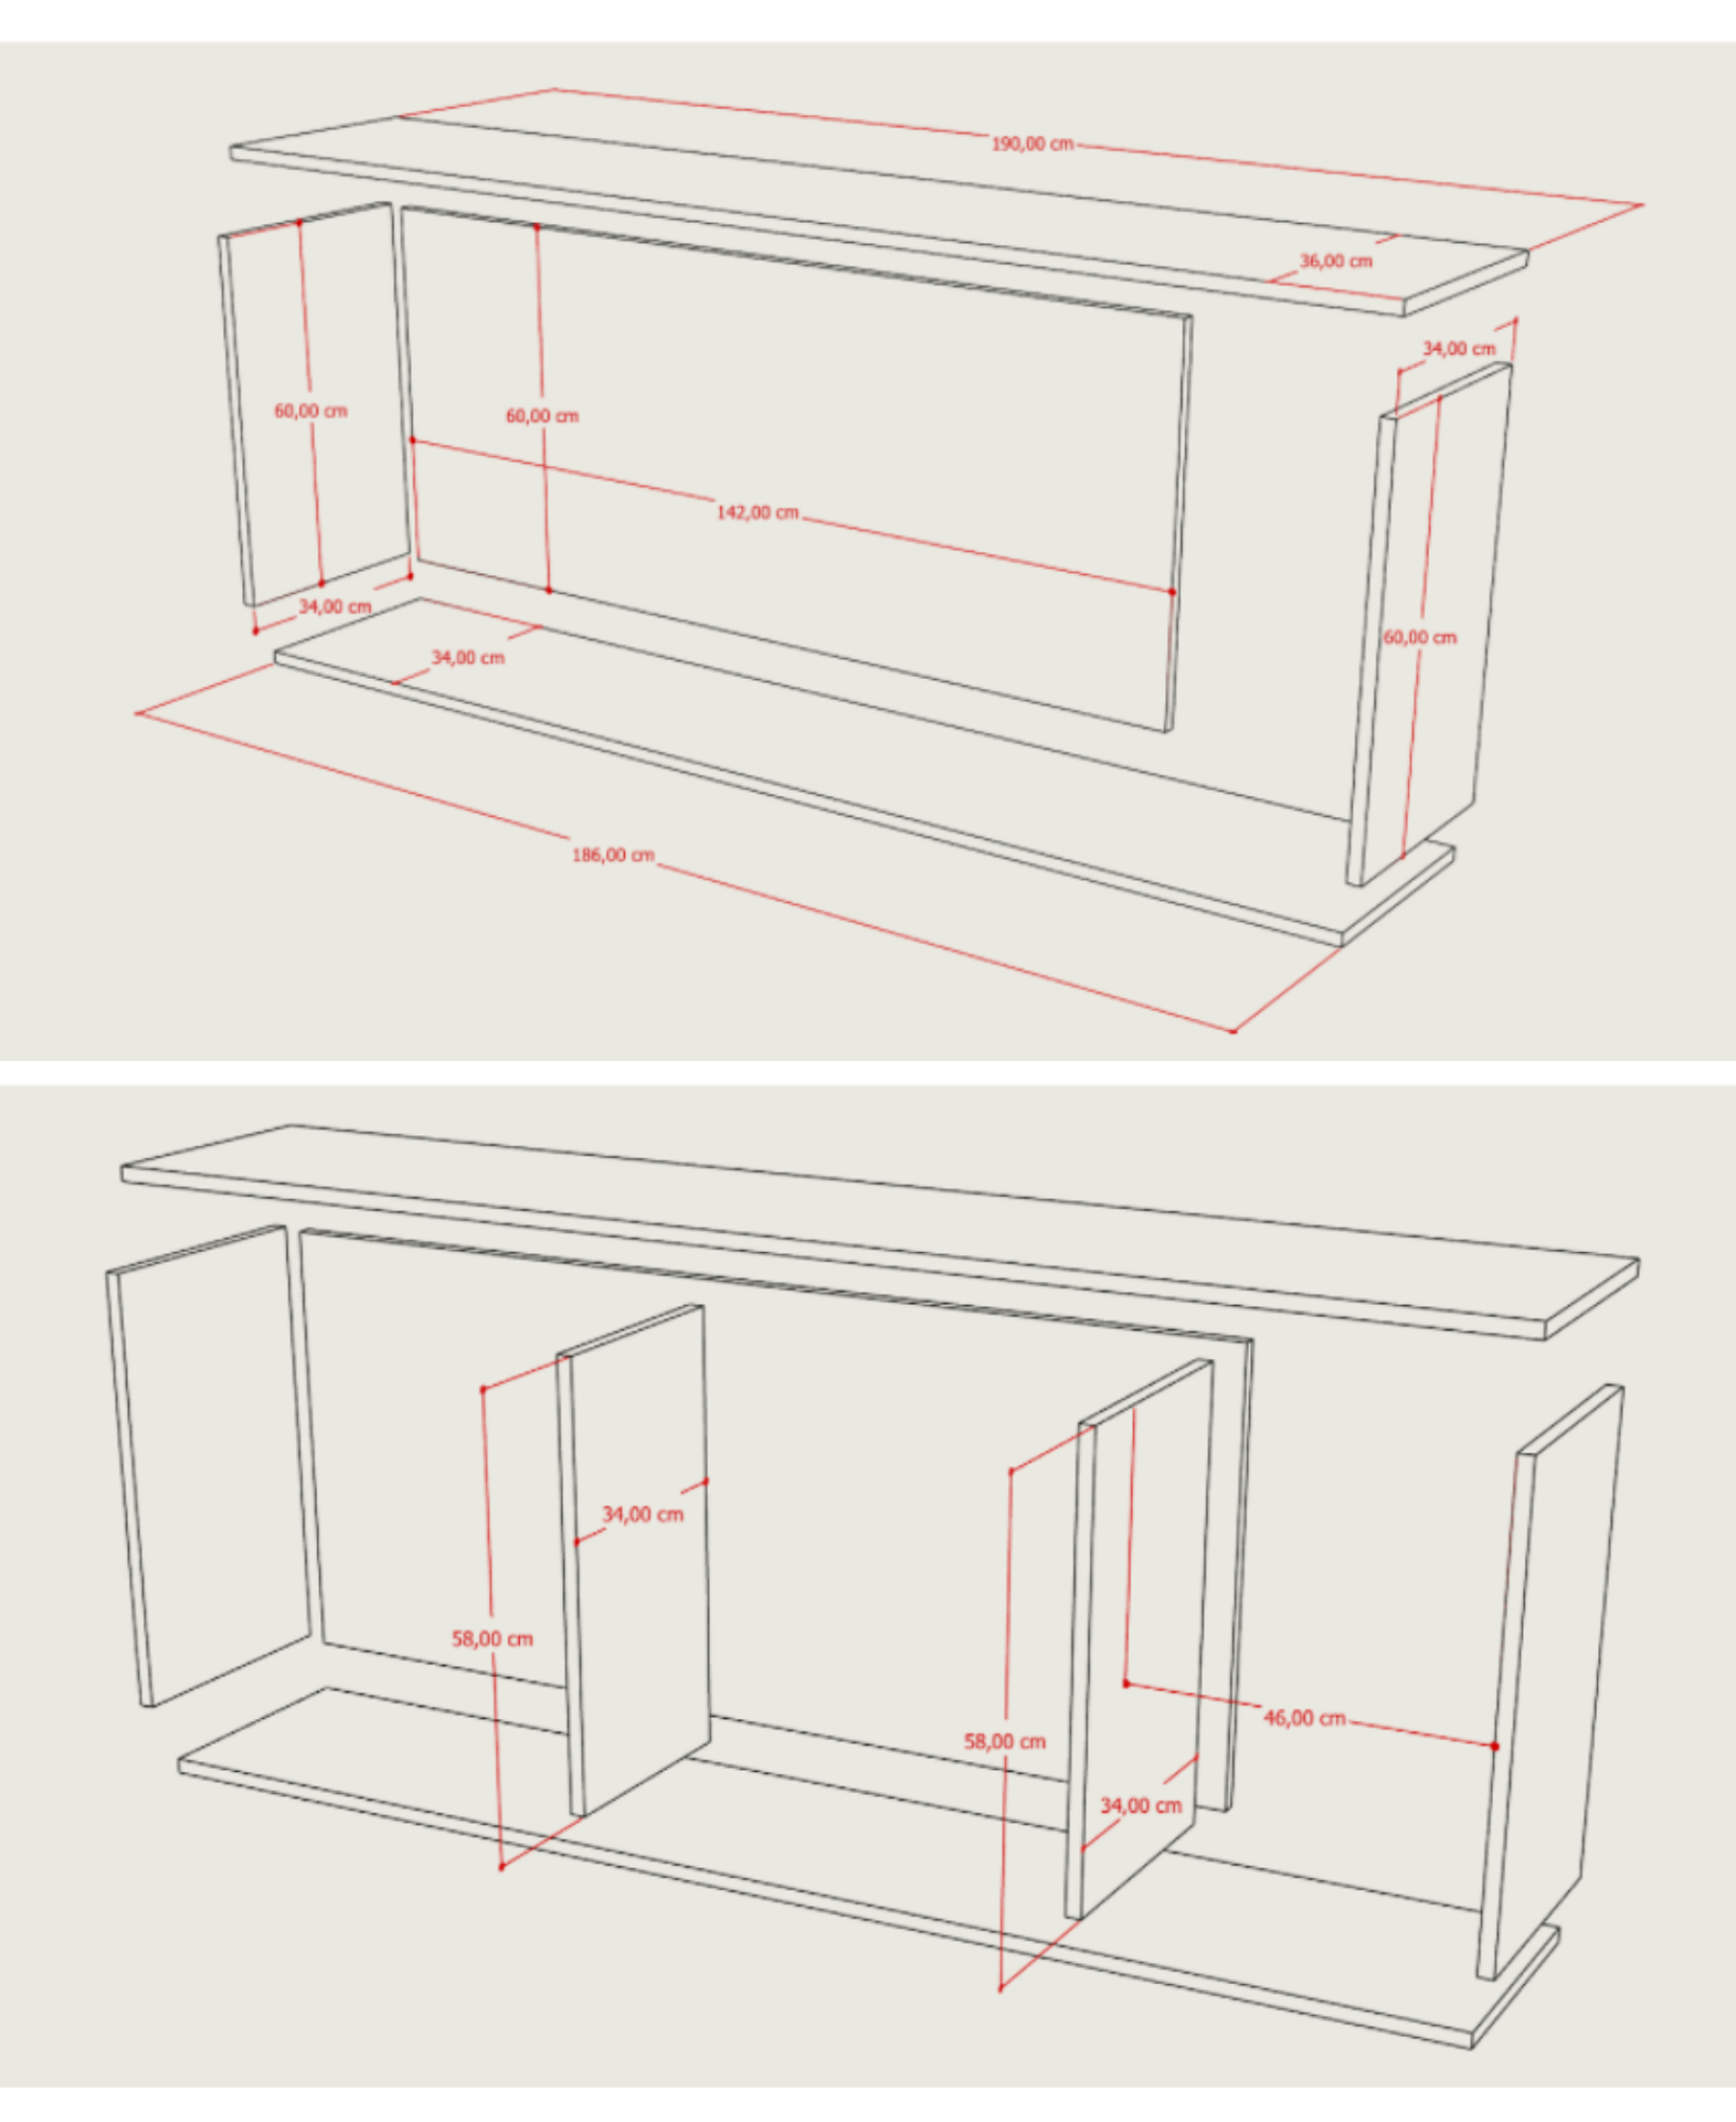 Comment créer un meuble de rangement pour son espace fitness (4m2) ?